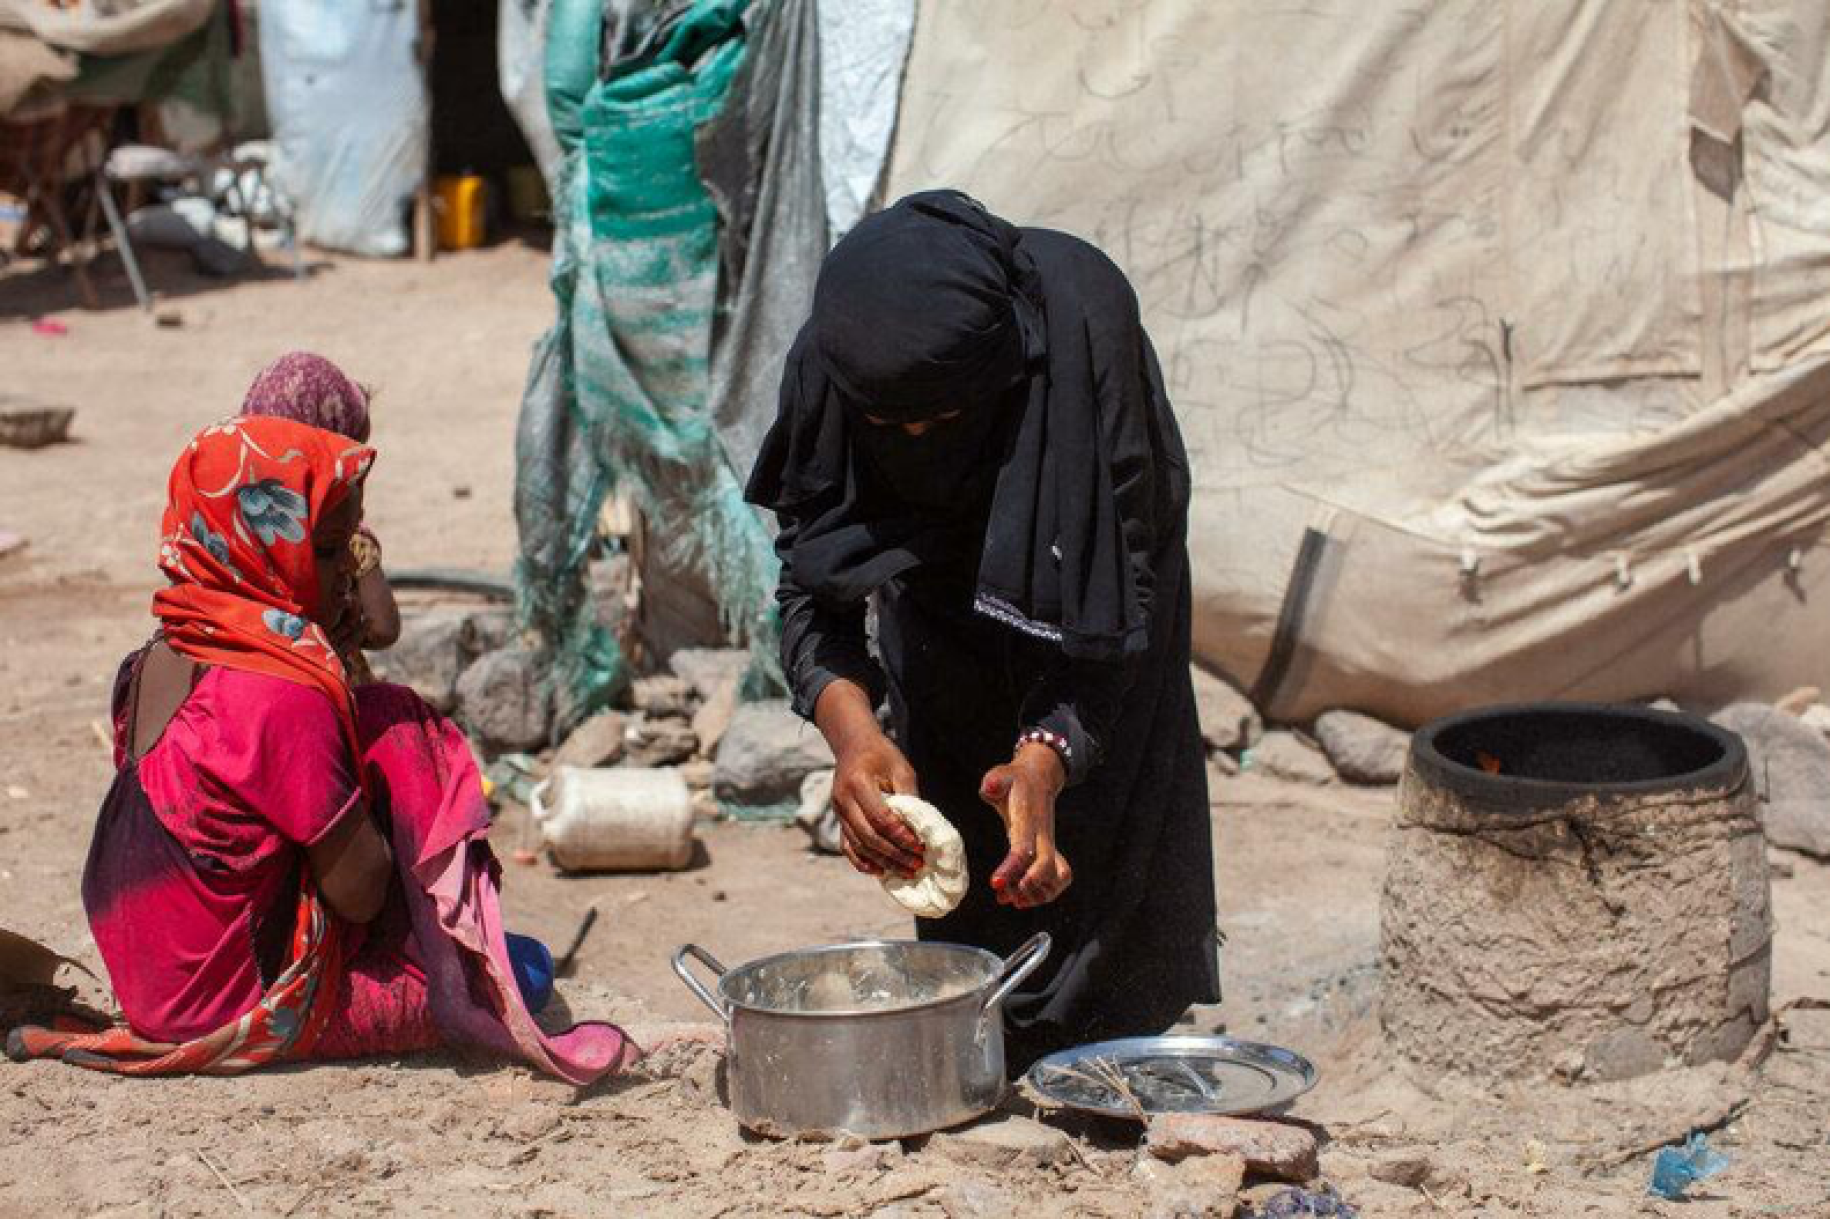 Une femme portant une longue robe noire et un voile noir sur la tête se penche en avant sur une marmite posée au sol, devant une tente, dans un camp de réfugiés, au Yémen.